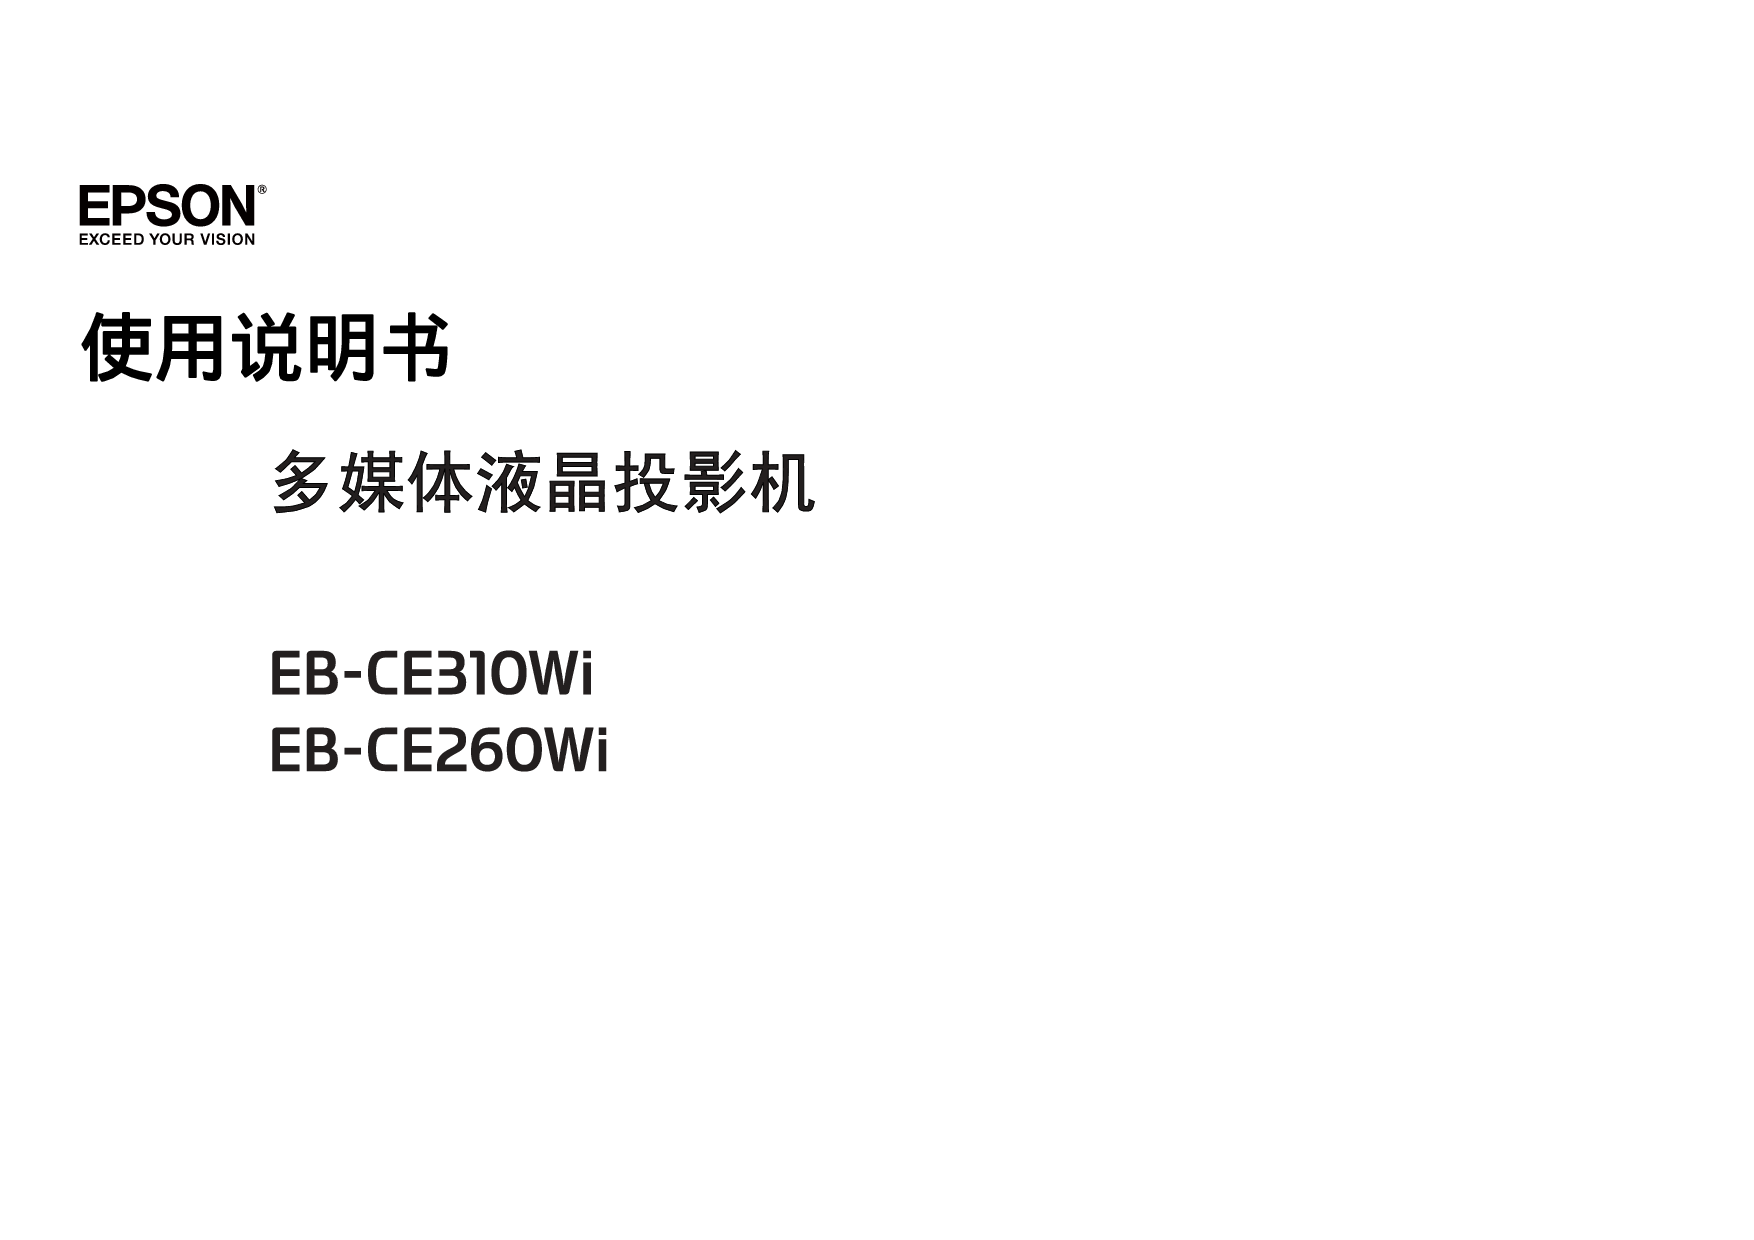 爱普生 Epson EB-CE260WI 使用说明书 封面